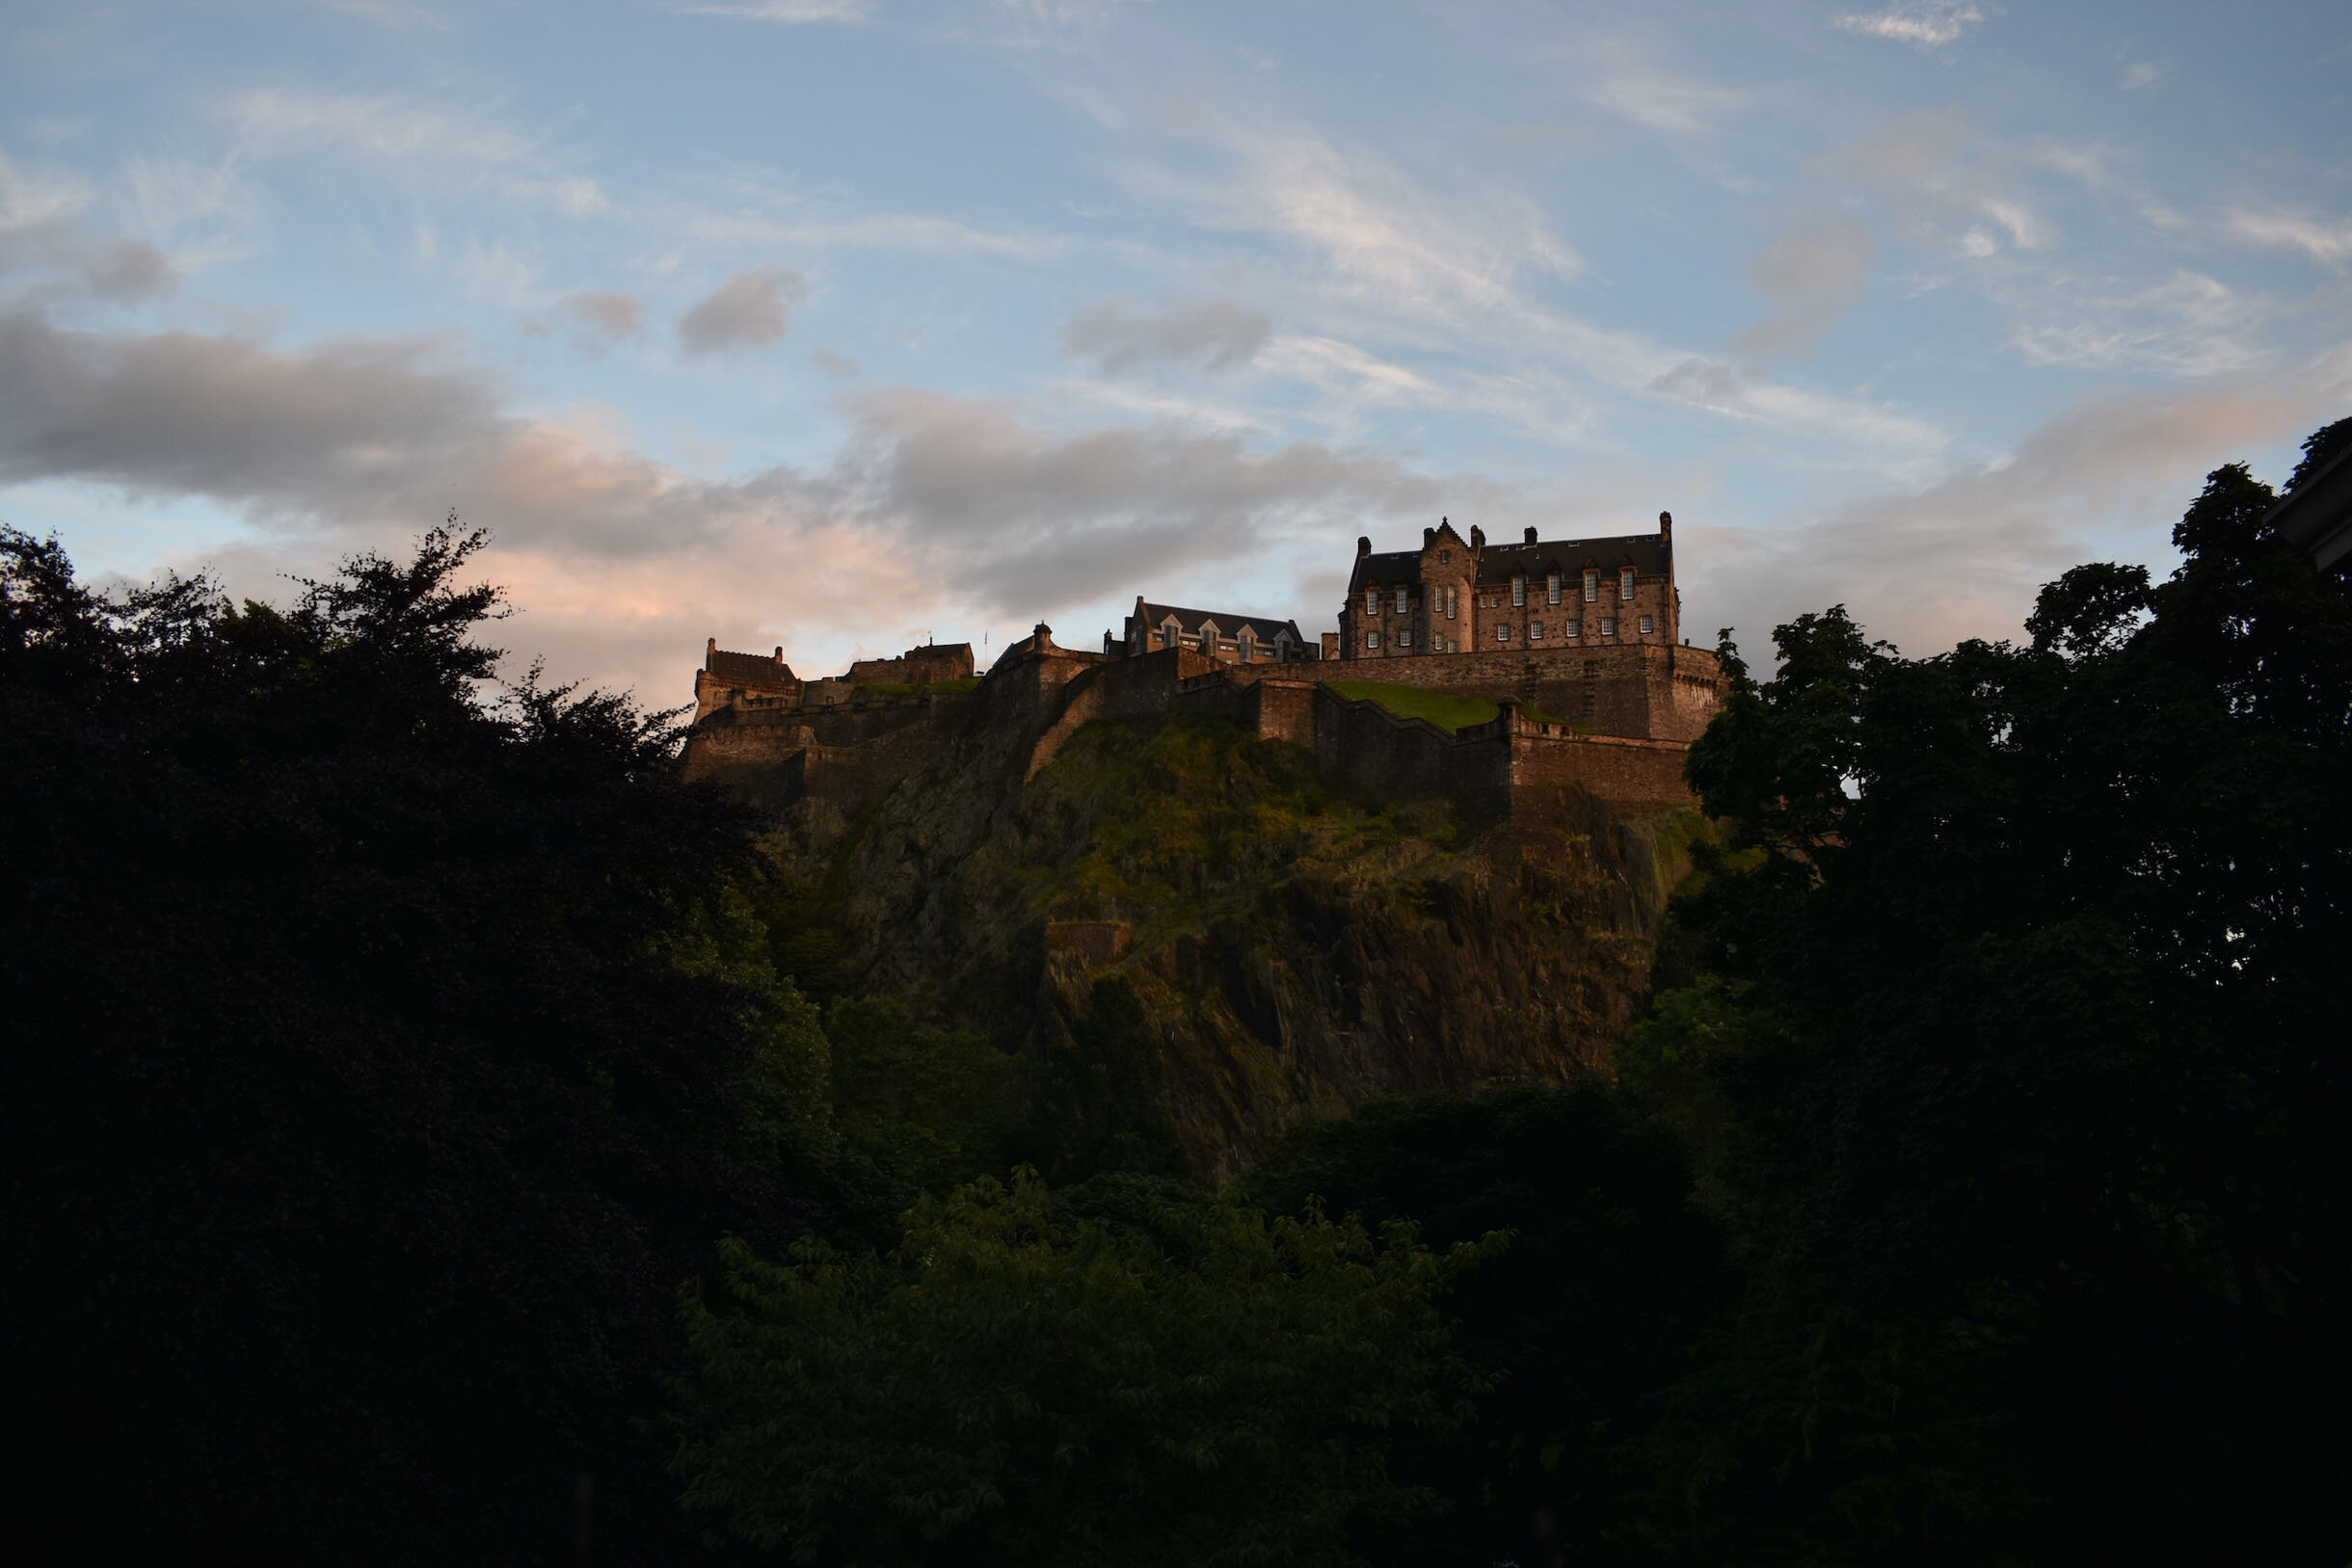  Edinburgh Castle 2017 